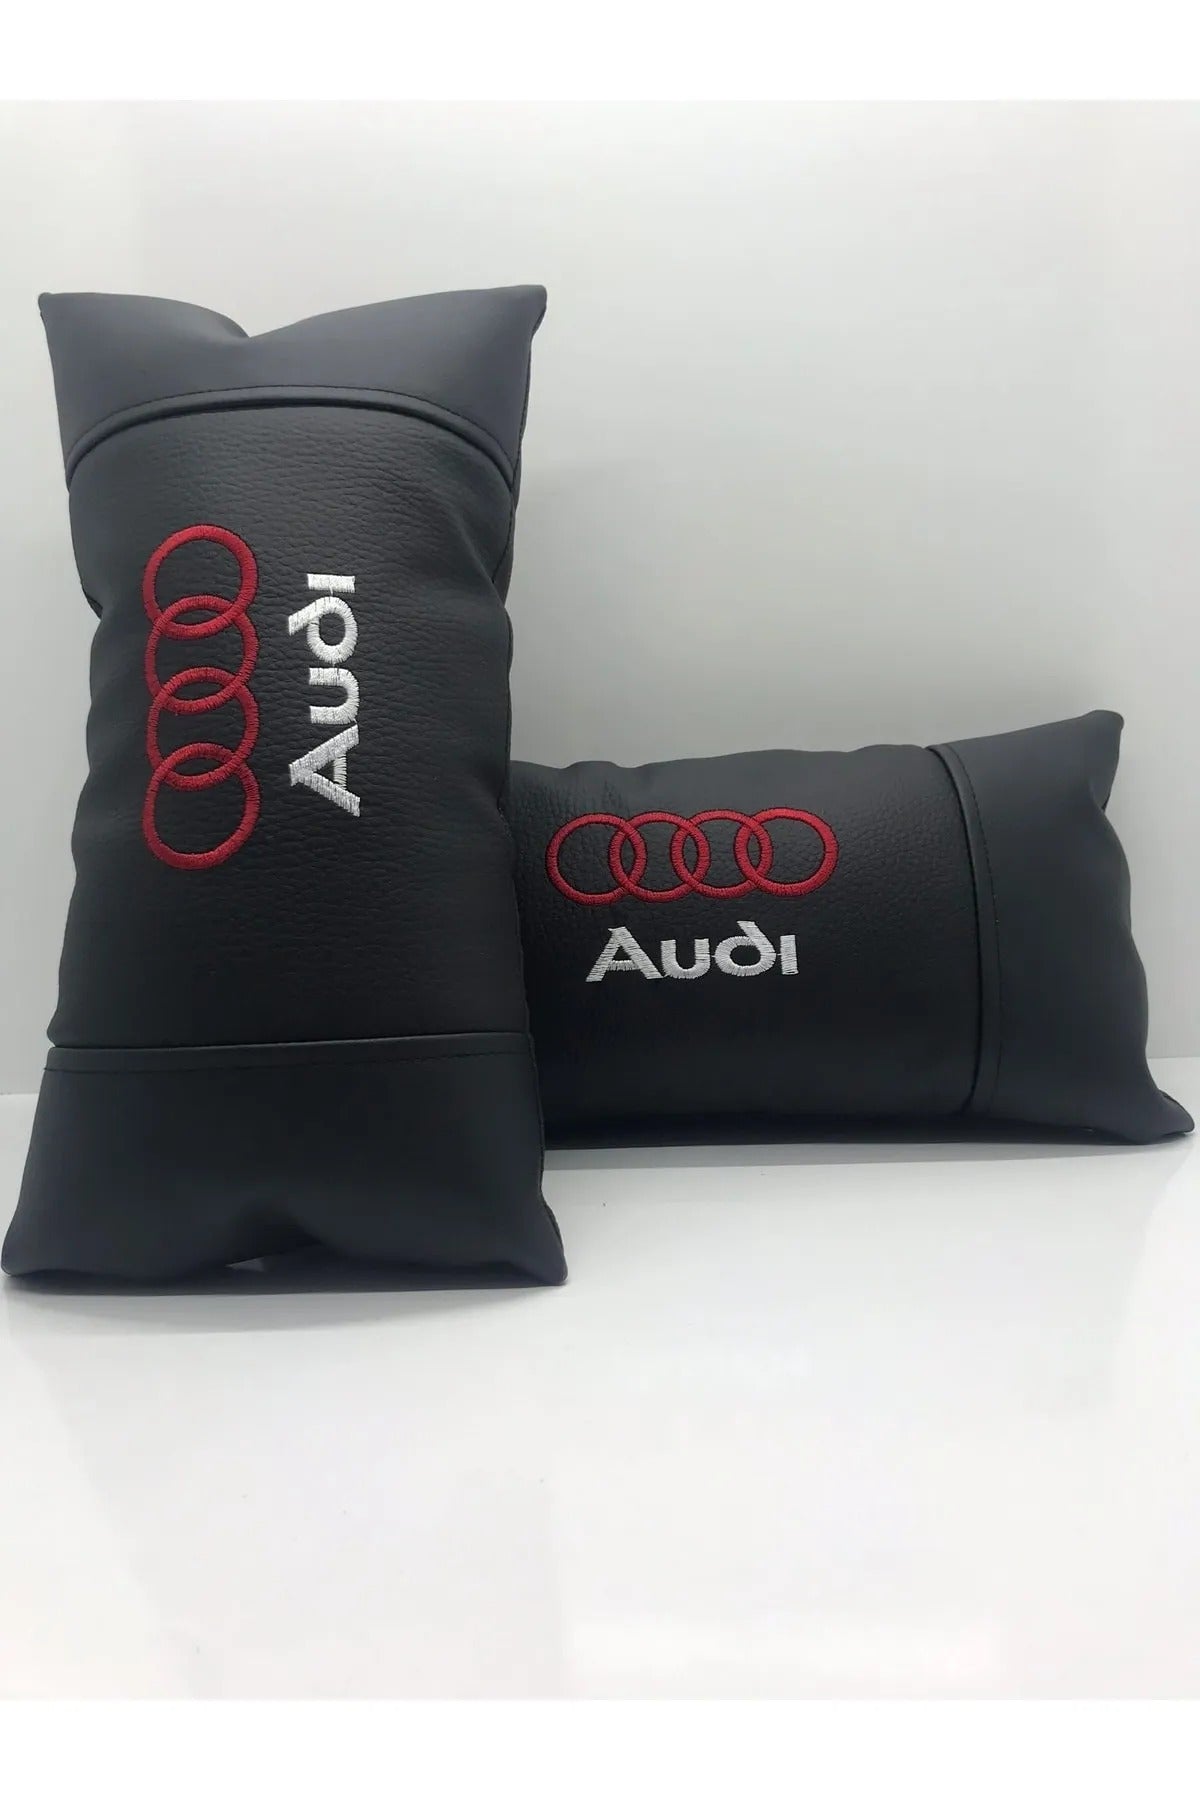 Audi Compatible Car Auto Neck Pillow 2 Pcs Luxury Leather Audi Car Pillow Car Pillow For ALL Audi Vehicle